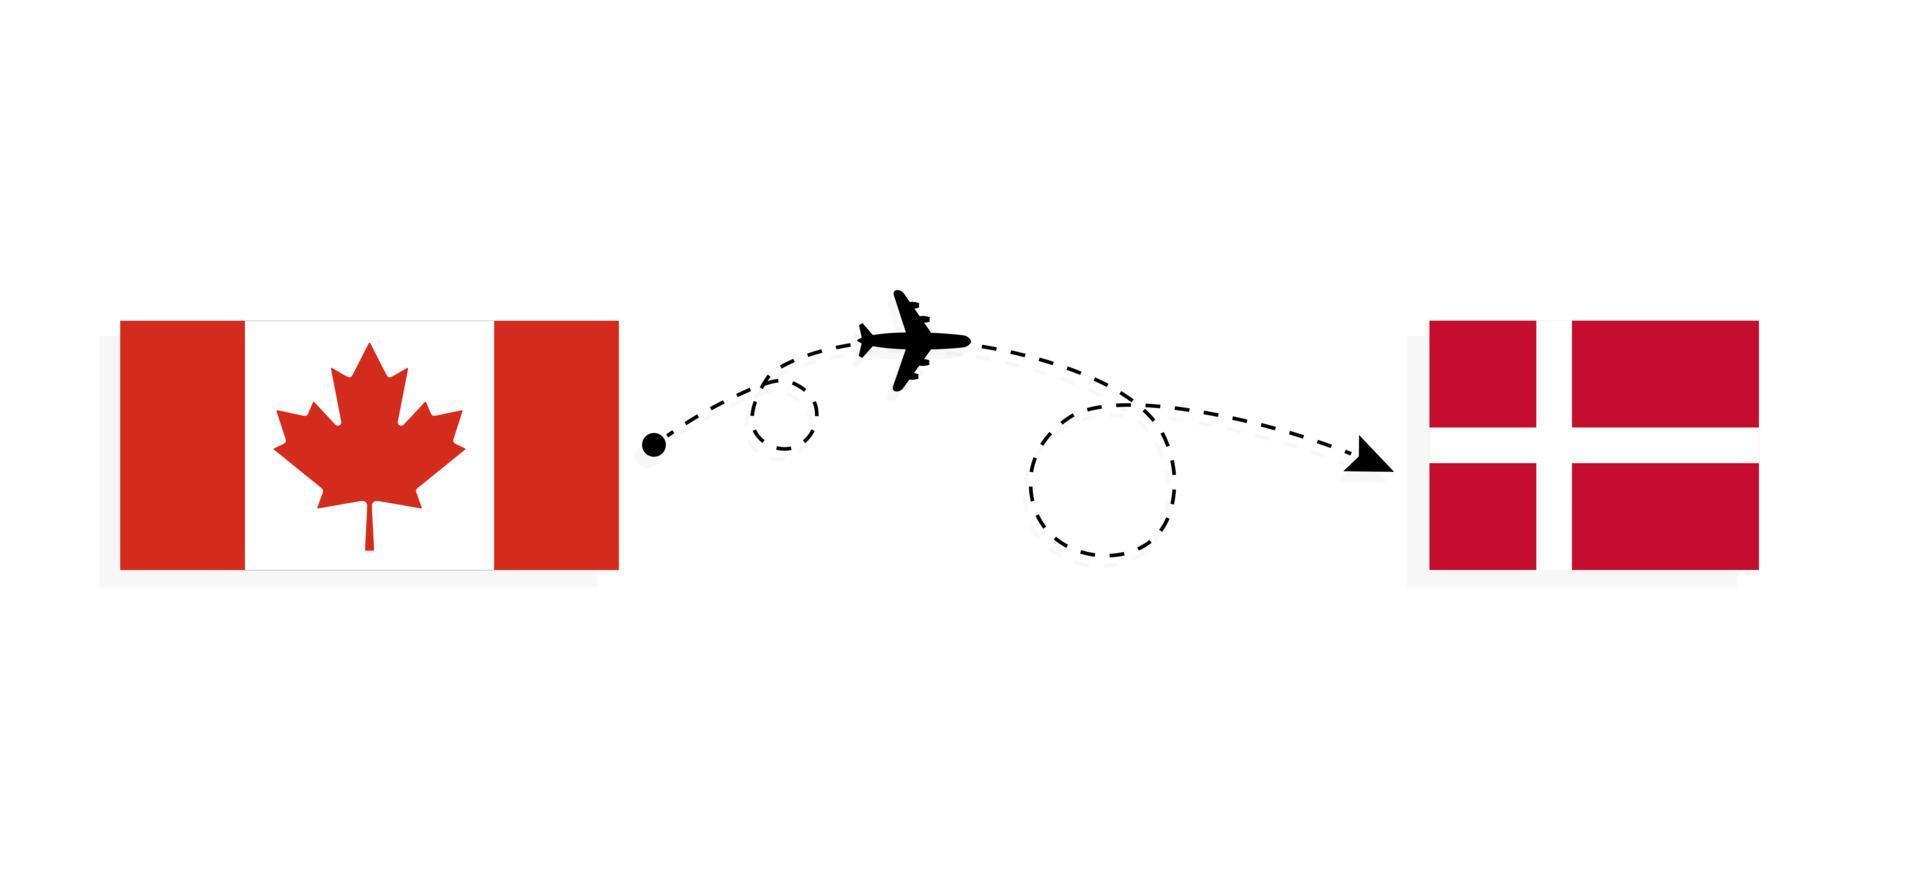 flyg och resor från Kanada till Danmark med passagerarflygplan vektor